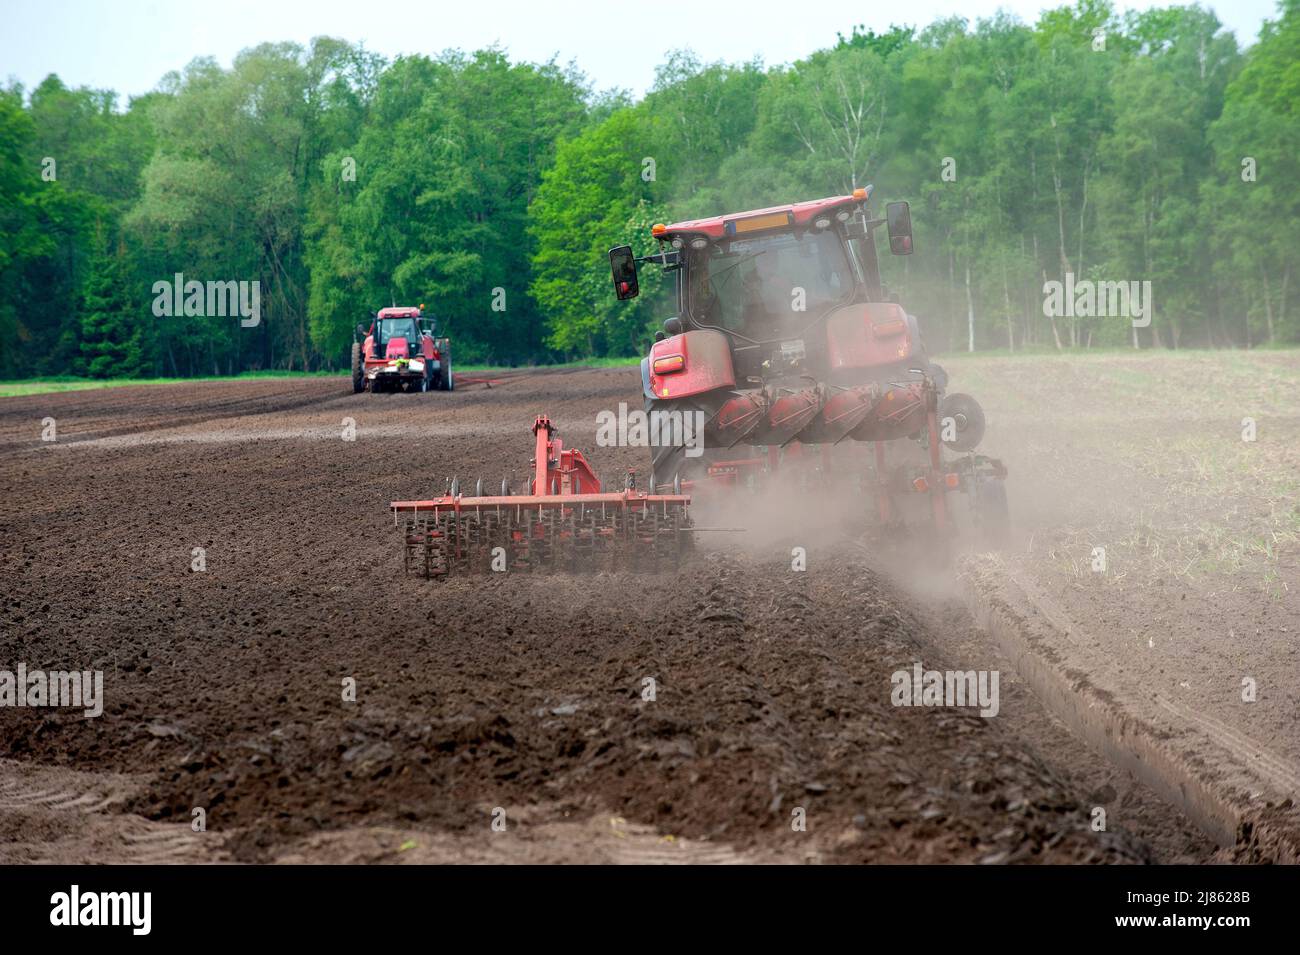 Un granjero está arando su tierra de labranza seca, mientras que otra máquina a la izquierda está sembrando patatas. Foto de stock